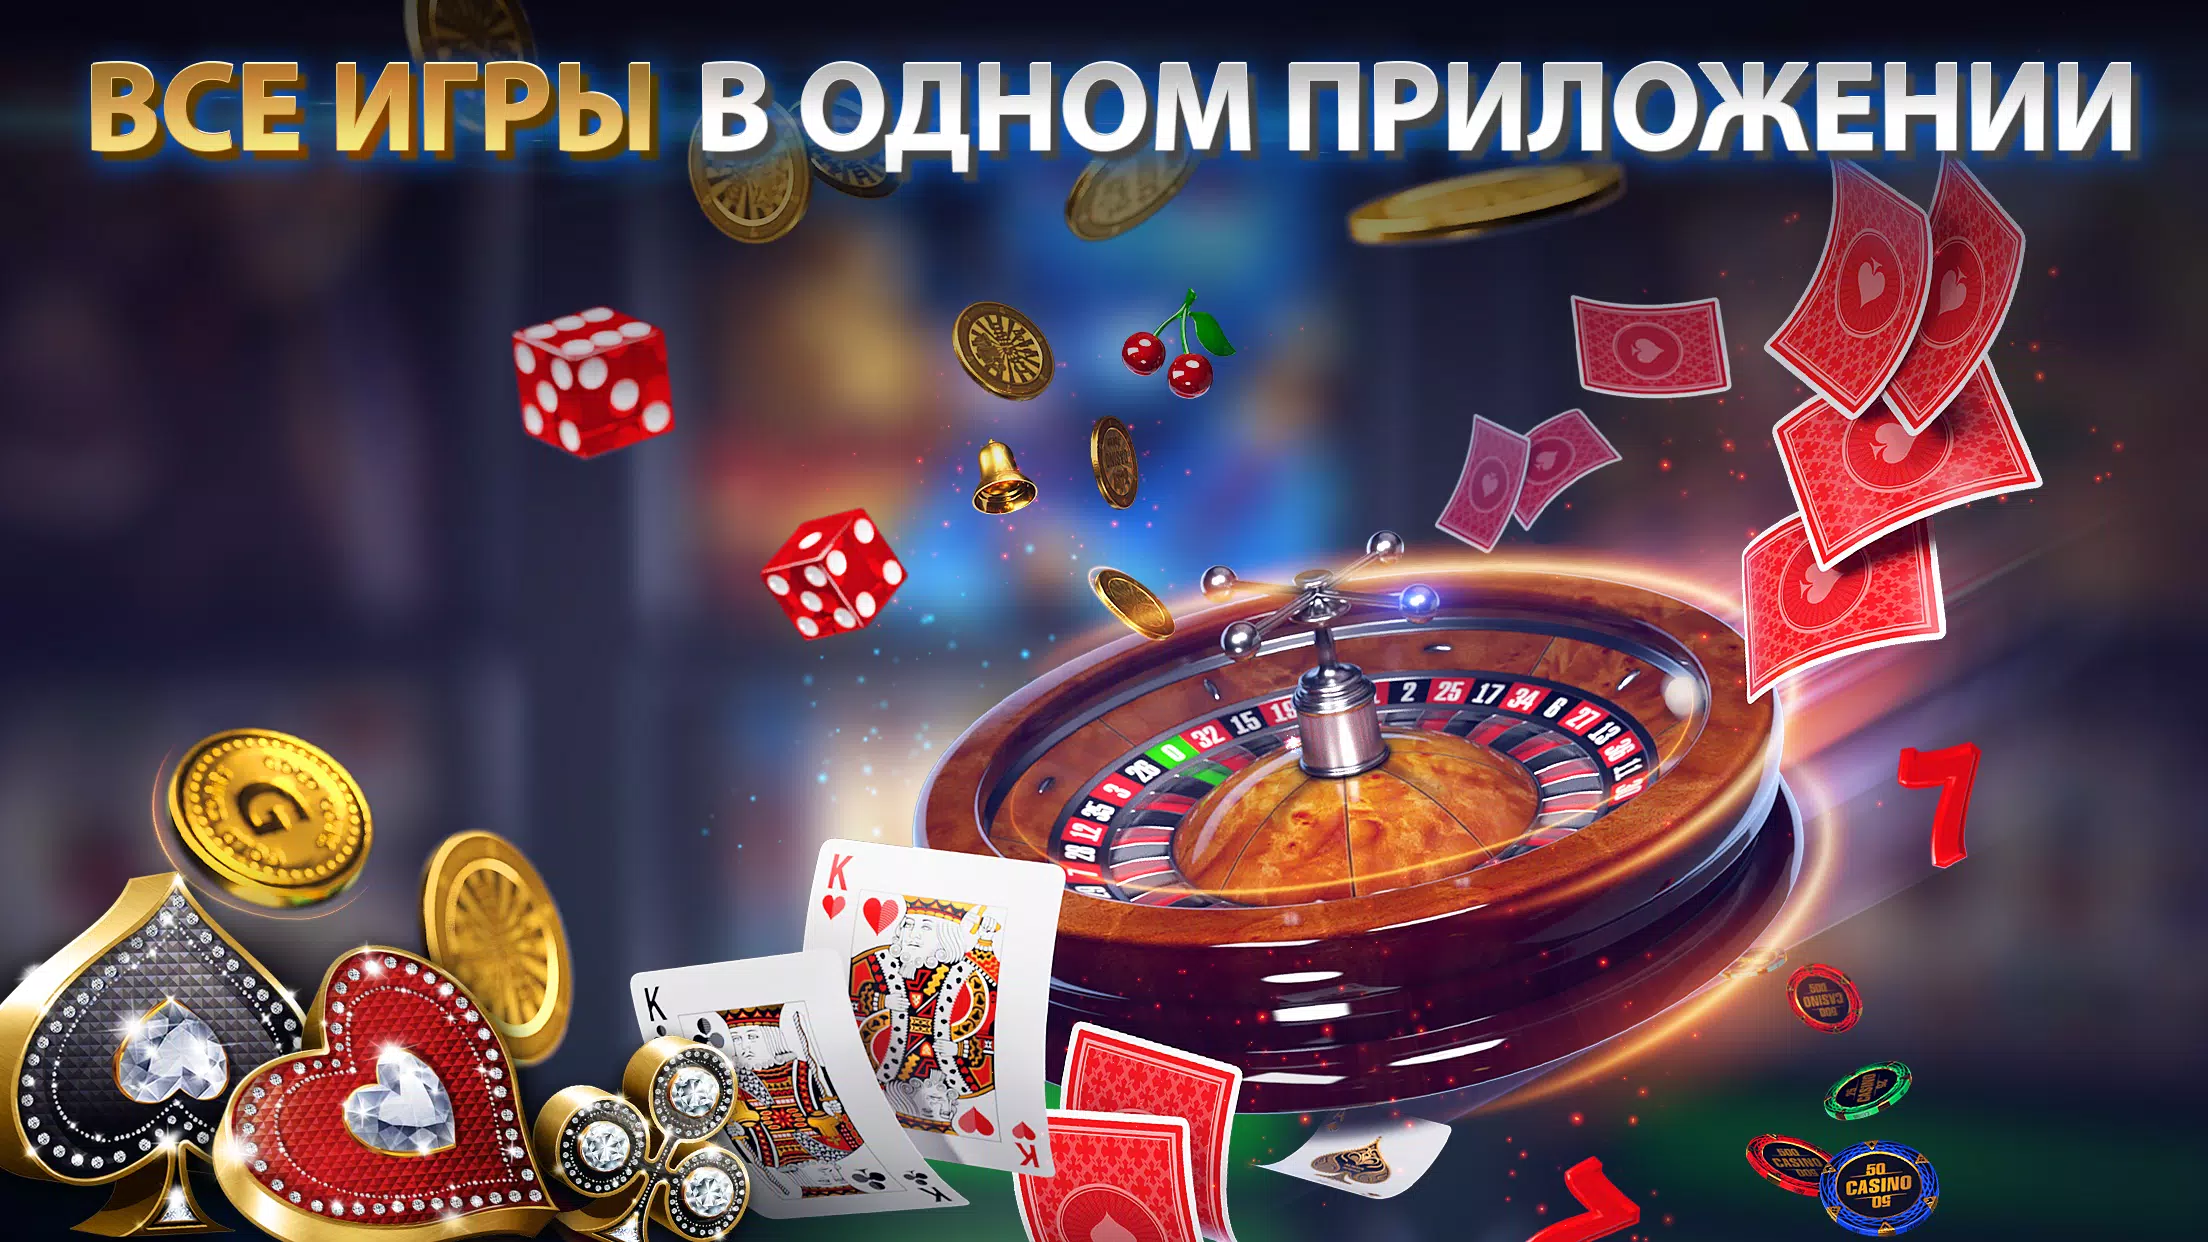 Покер омаха онлайн играть бесплатно ставка смотреть онлайн все выпуски